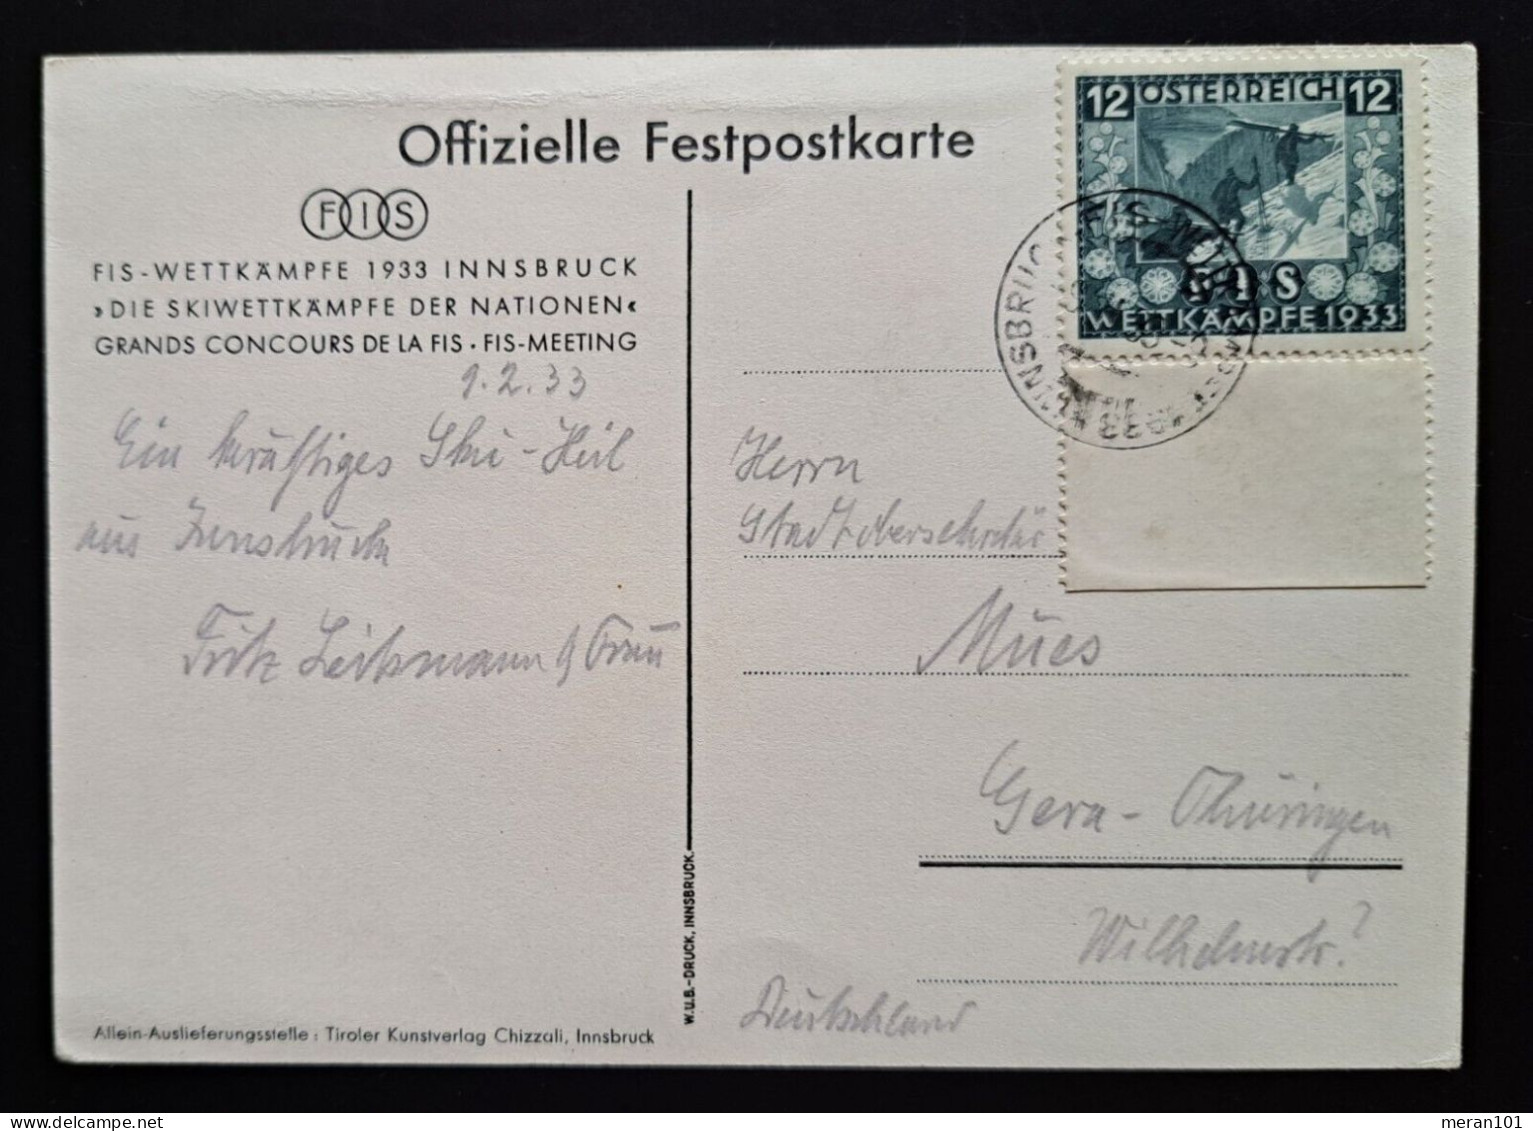 Österreich, Festpostkarte FIS- WETTKÄMPFE 1933 Mi 551 - Briefe U. Dokumente